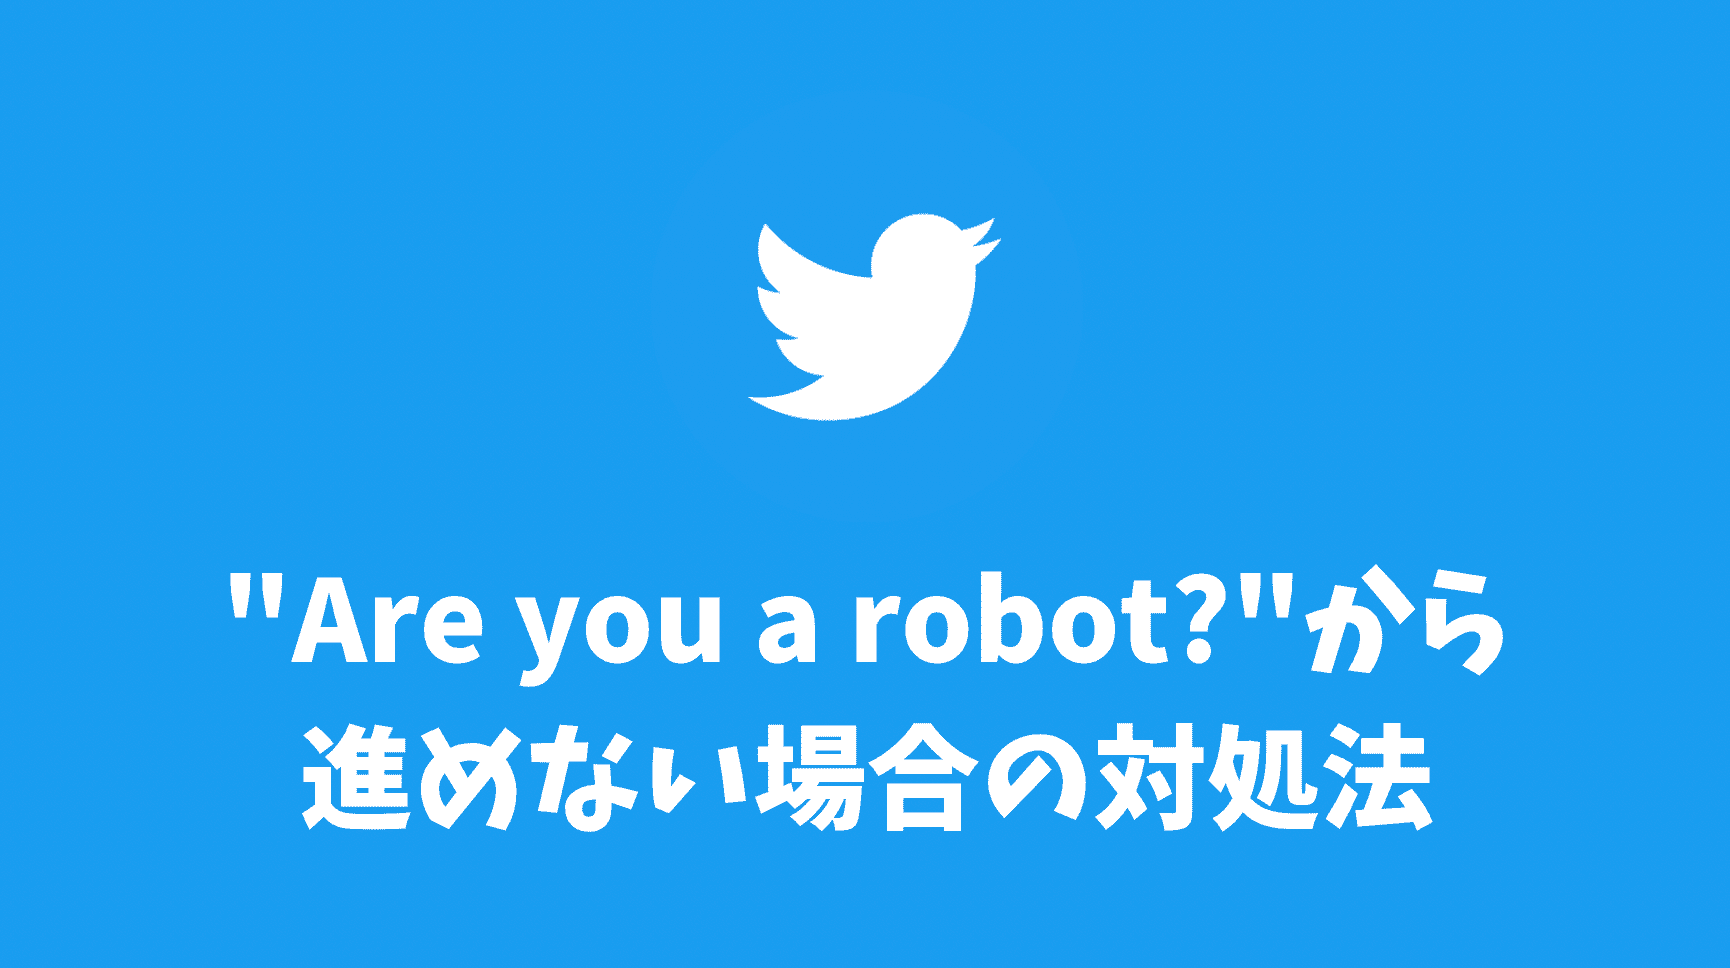 Twitterロボットでないことを証明"Are you a robot?"から進めない場合の対処法